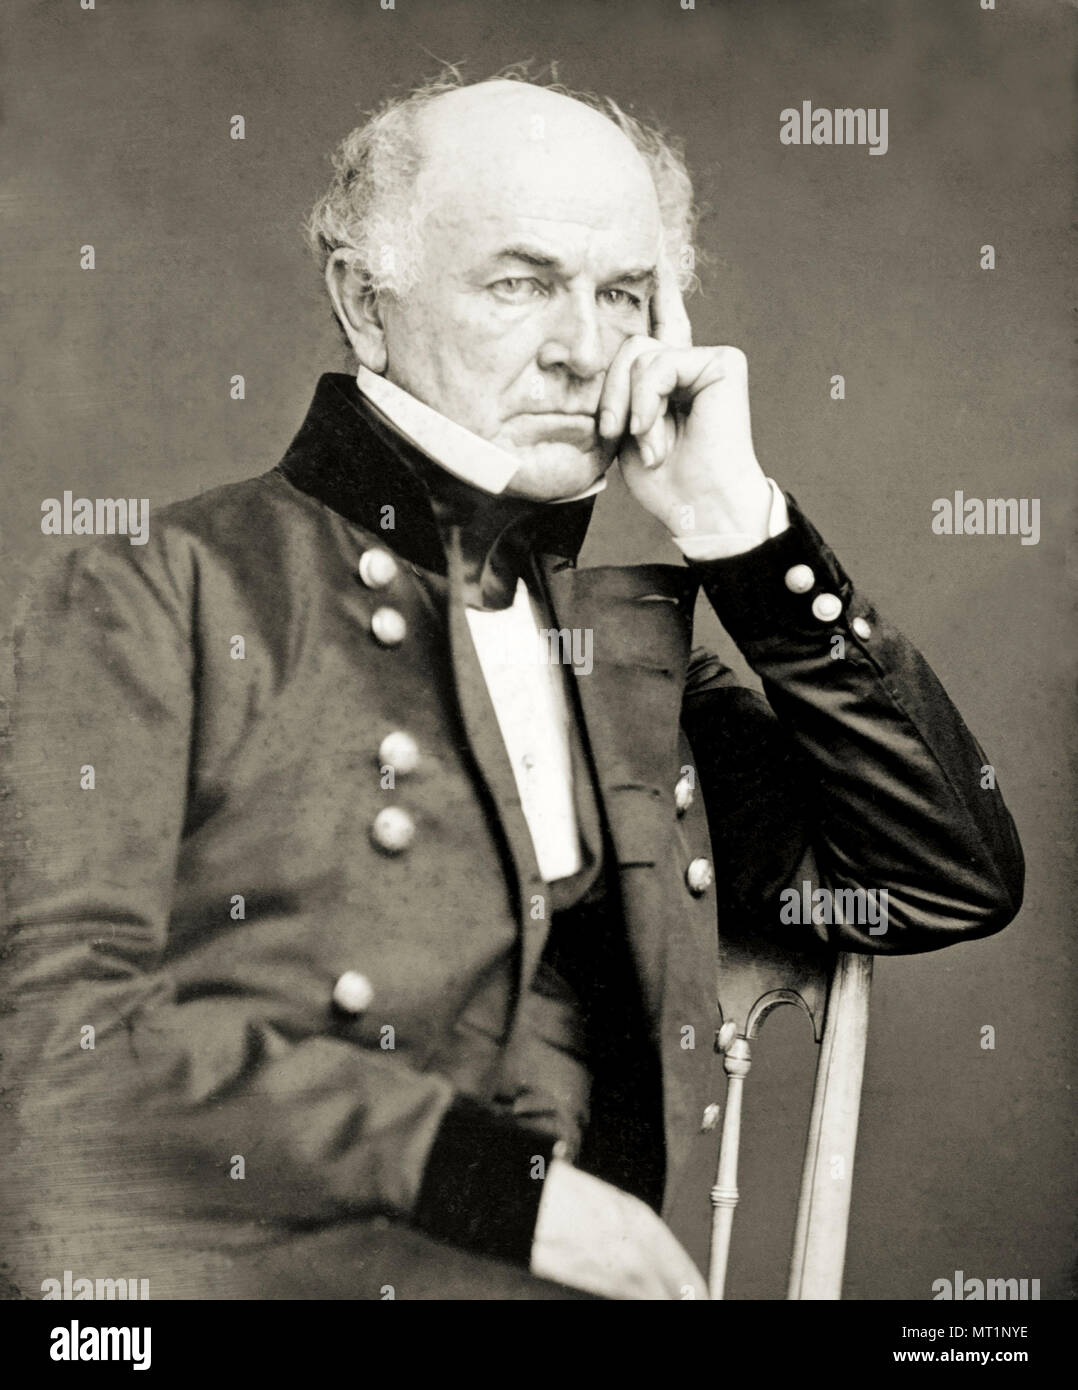 Ethan Allen Hitchcock (1798 - 1870) officier de l'armée des États-Unis pendant la guerre civile américaine Banque D'Images